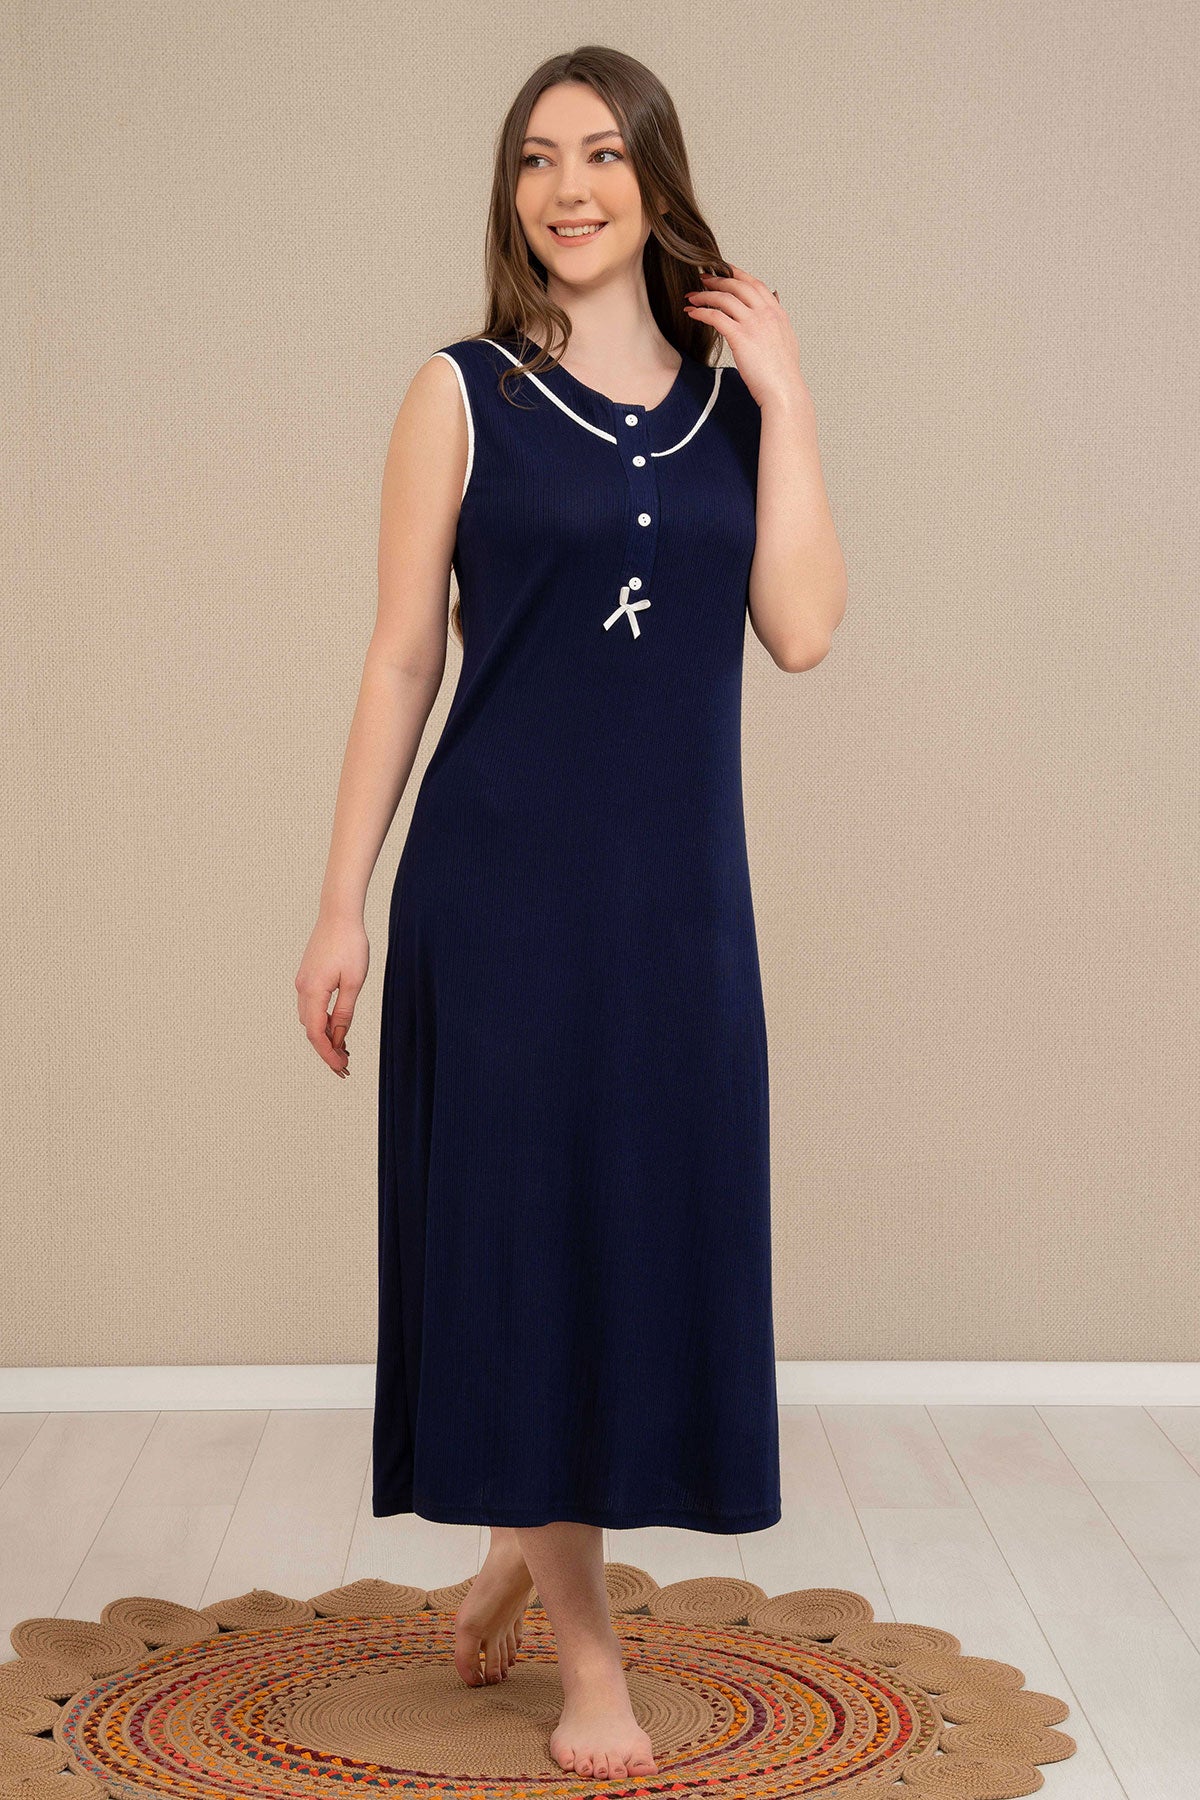 Shopymommy 4525 Strap Maternity & Nursing Nightgown Stripe Robe Navy Blue